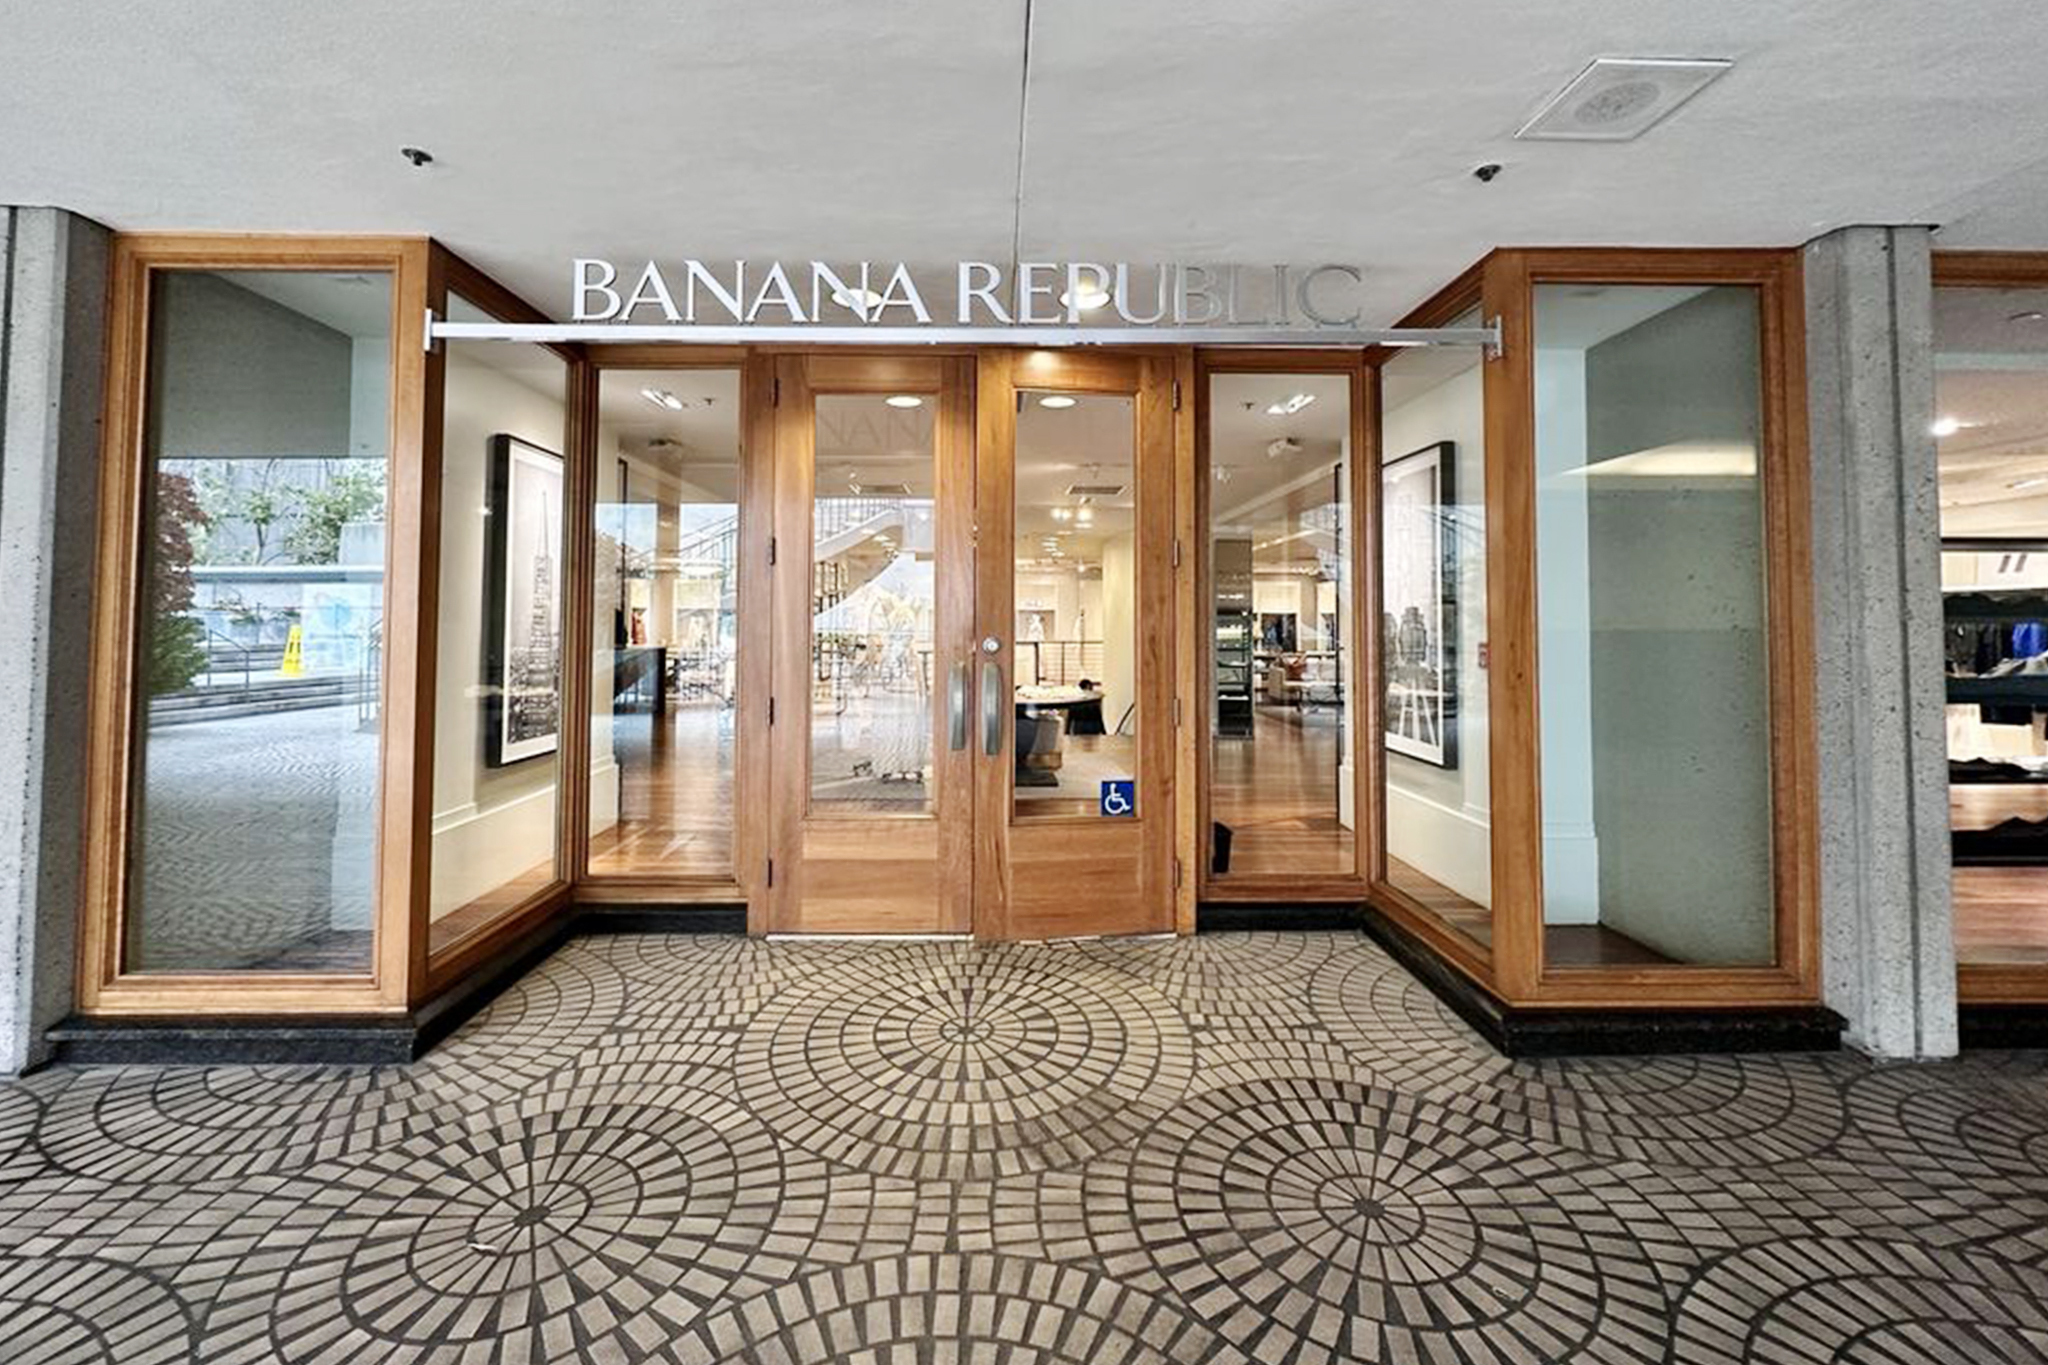 Gap cierra su tienda Banana Republic en el centro de San Francisco